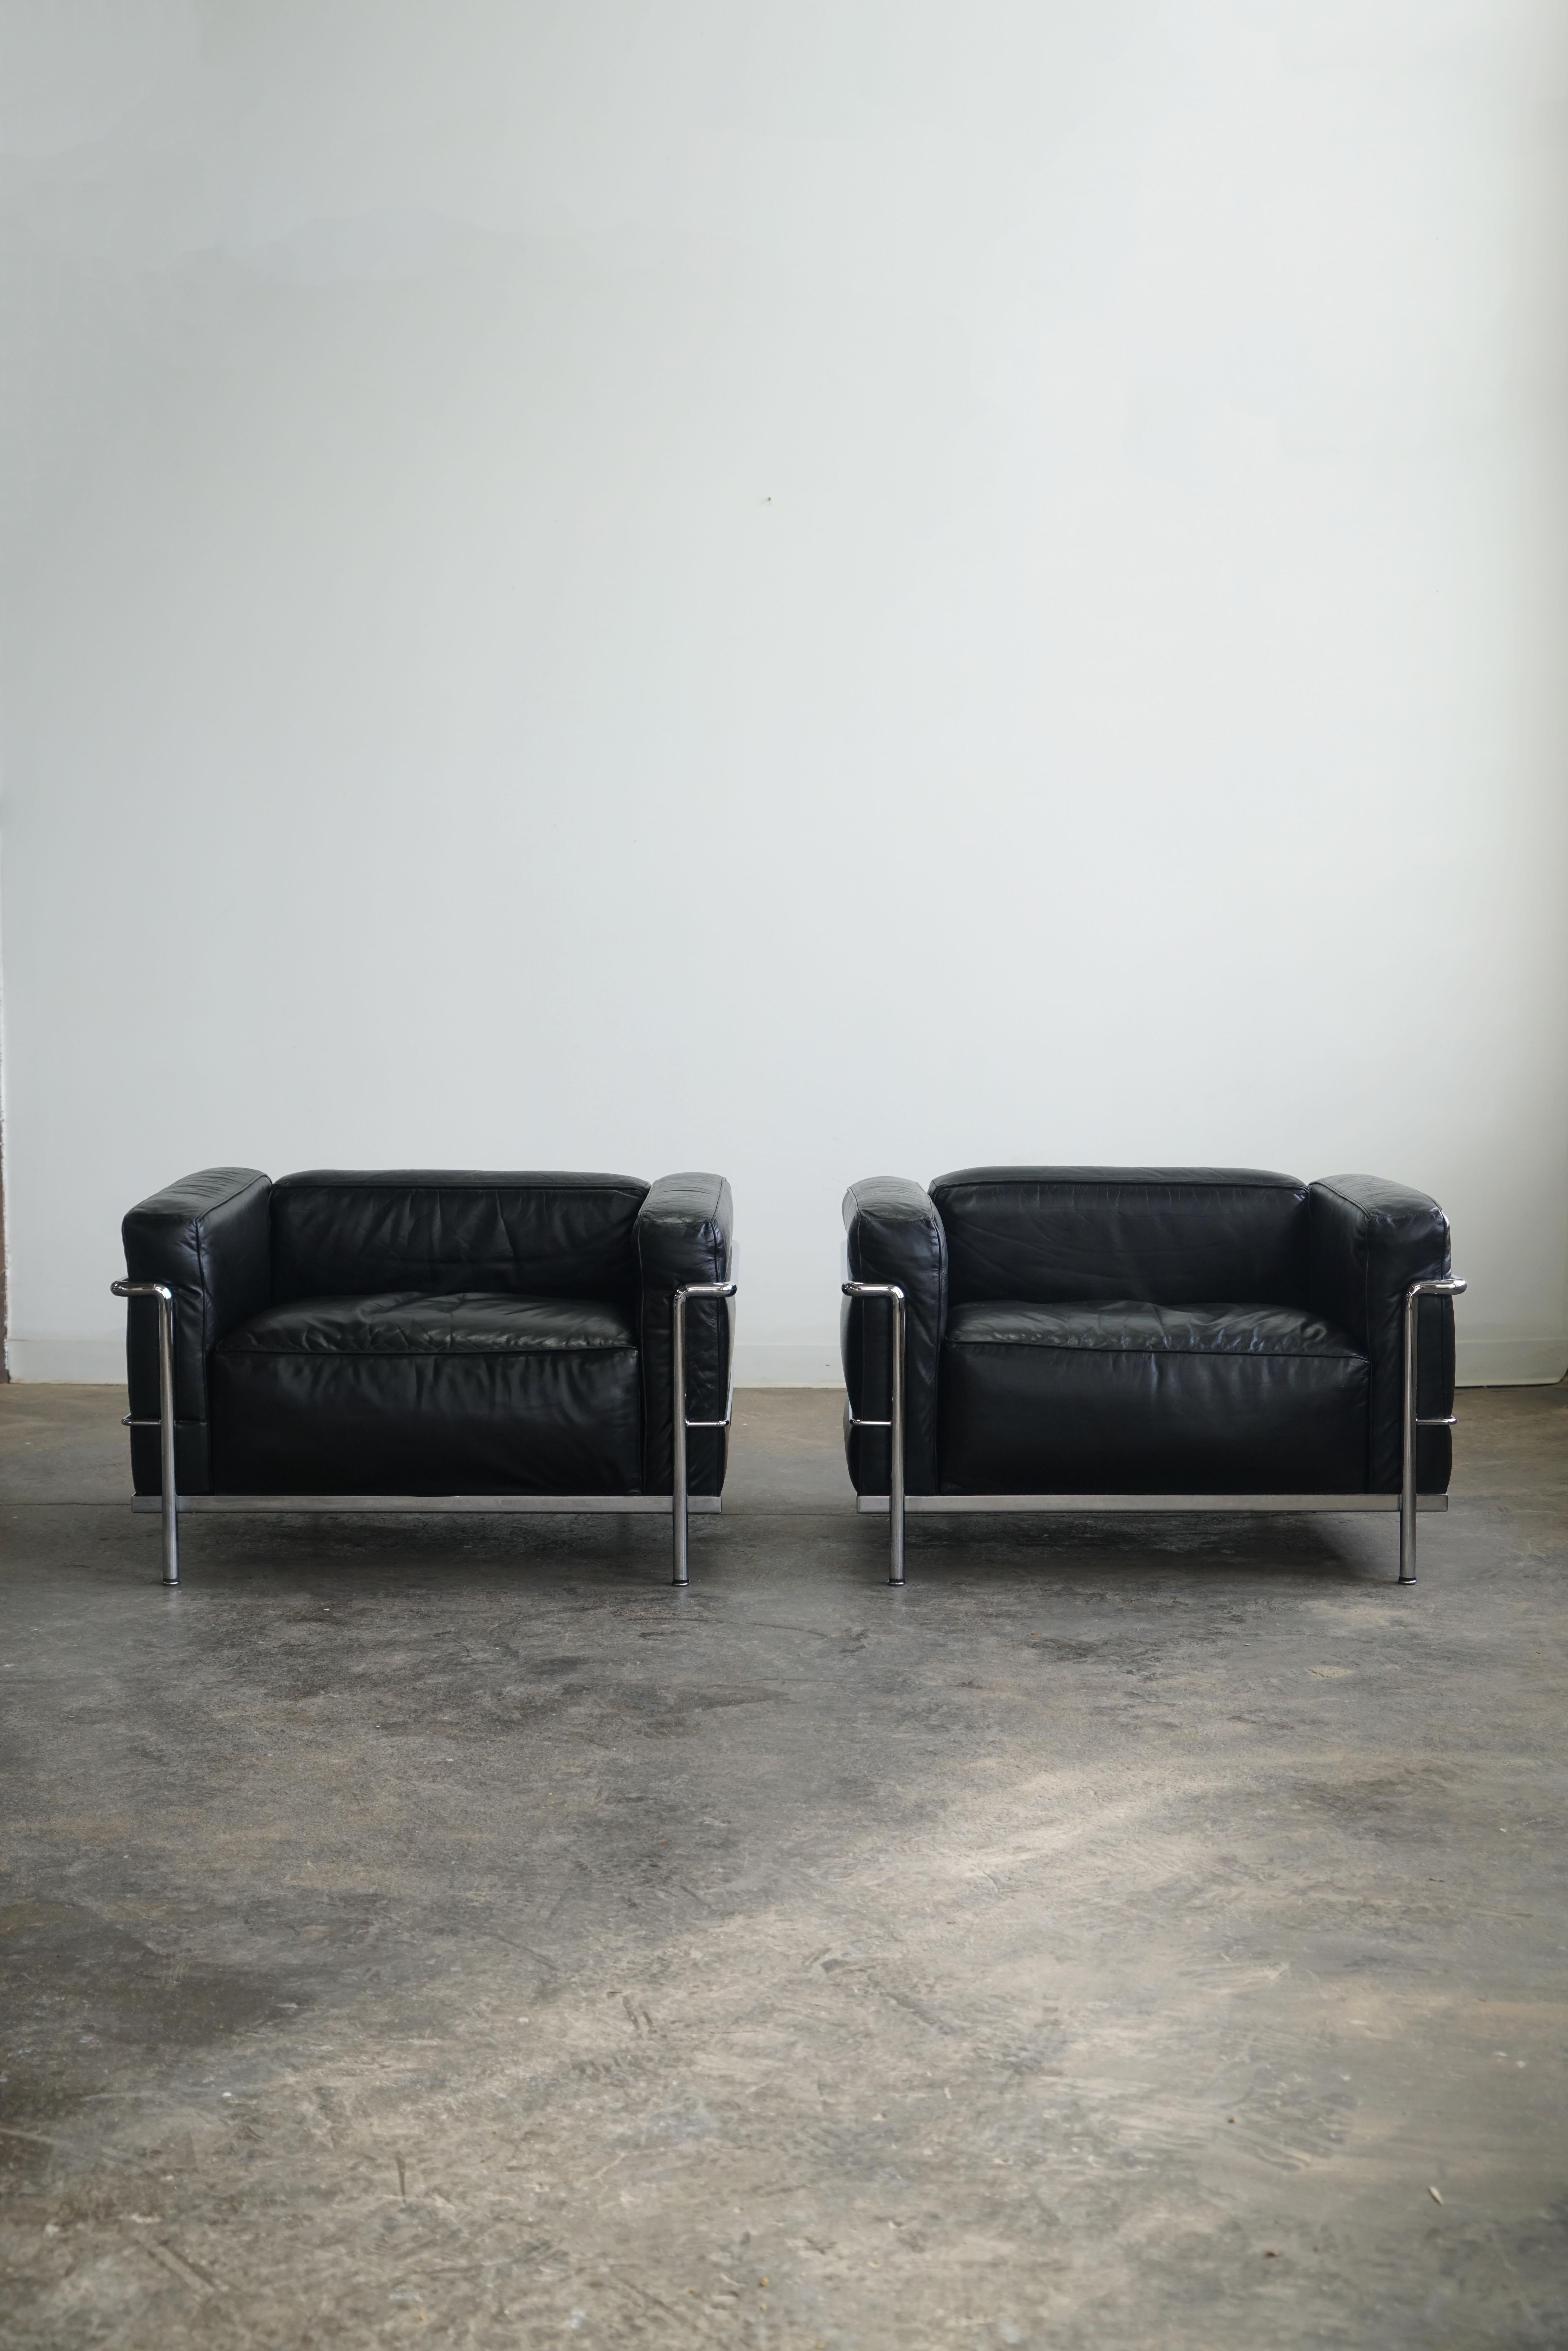 Paire de fauteuils LC3 Grand Modele pour Cassina.
Cuir noir et acier chromé.

L'une des chaises les plus emblématiques, la LC3 a été conçue en 1928 par Le Corbusier, Pierre Jeanneret et Charlotte Perriand. Cette chaise est un véritable symbole